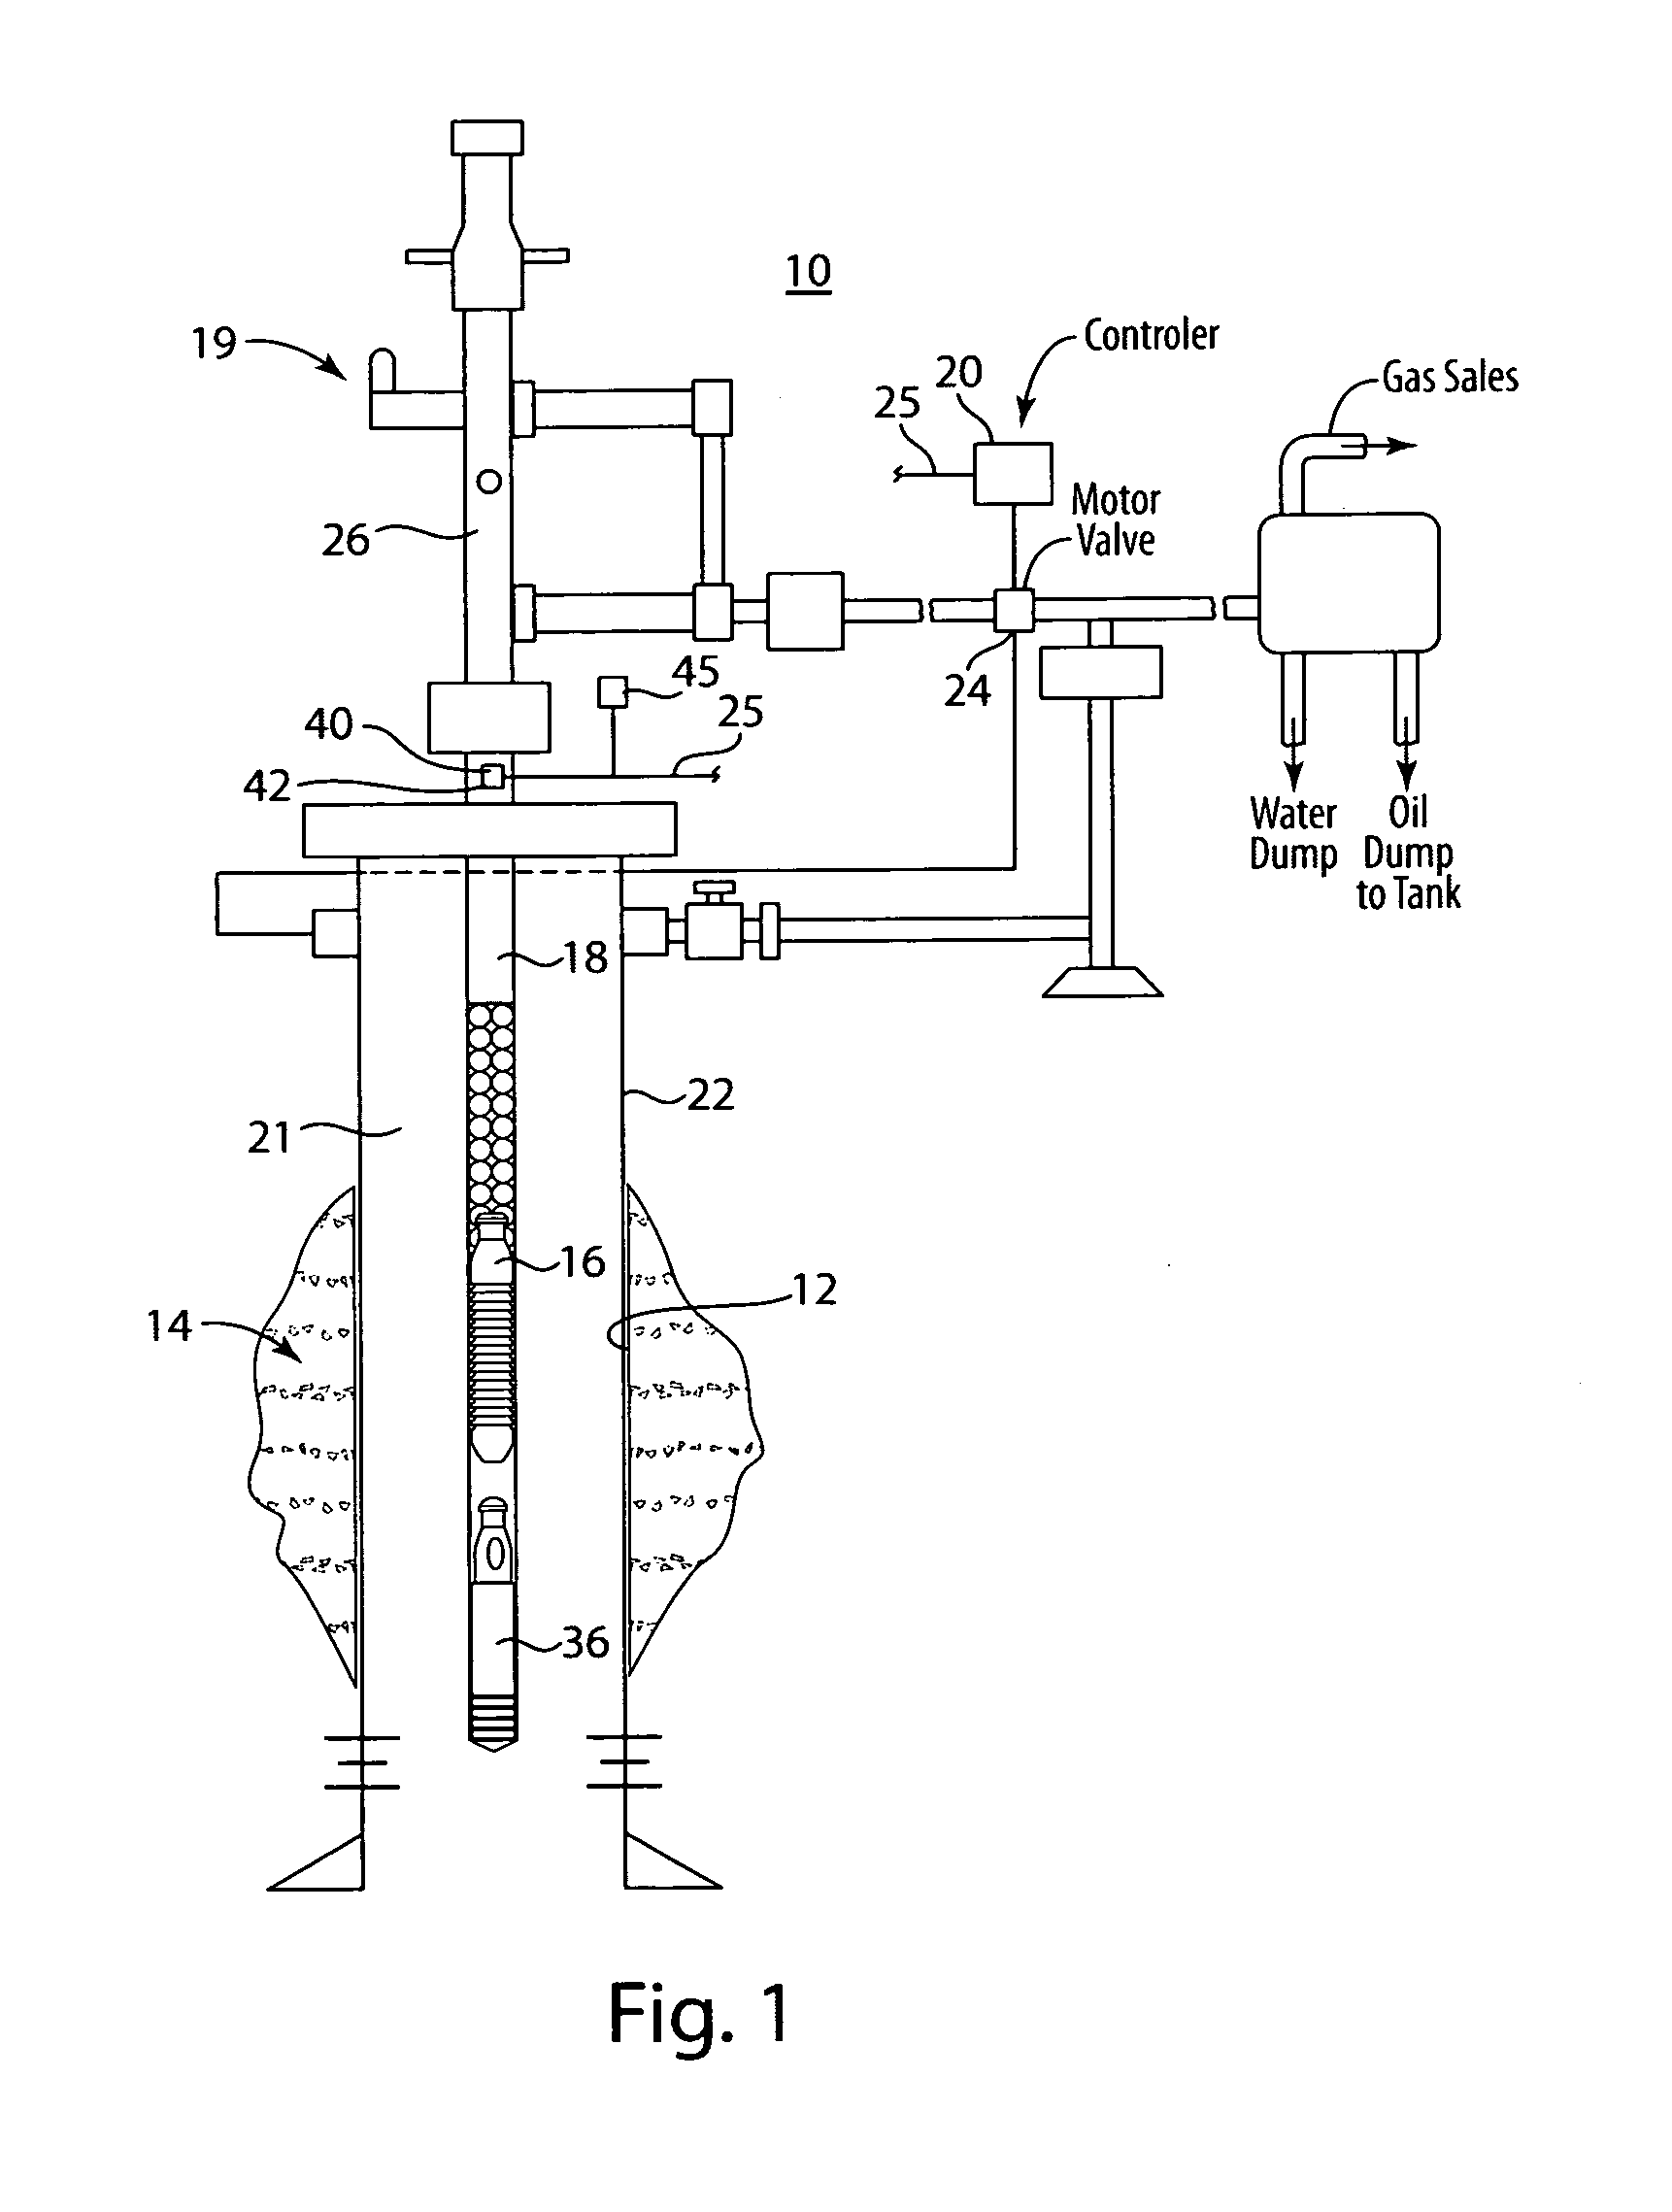 Plunger lift control system arrangement